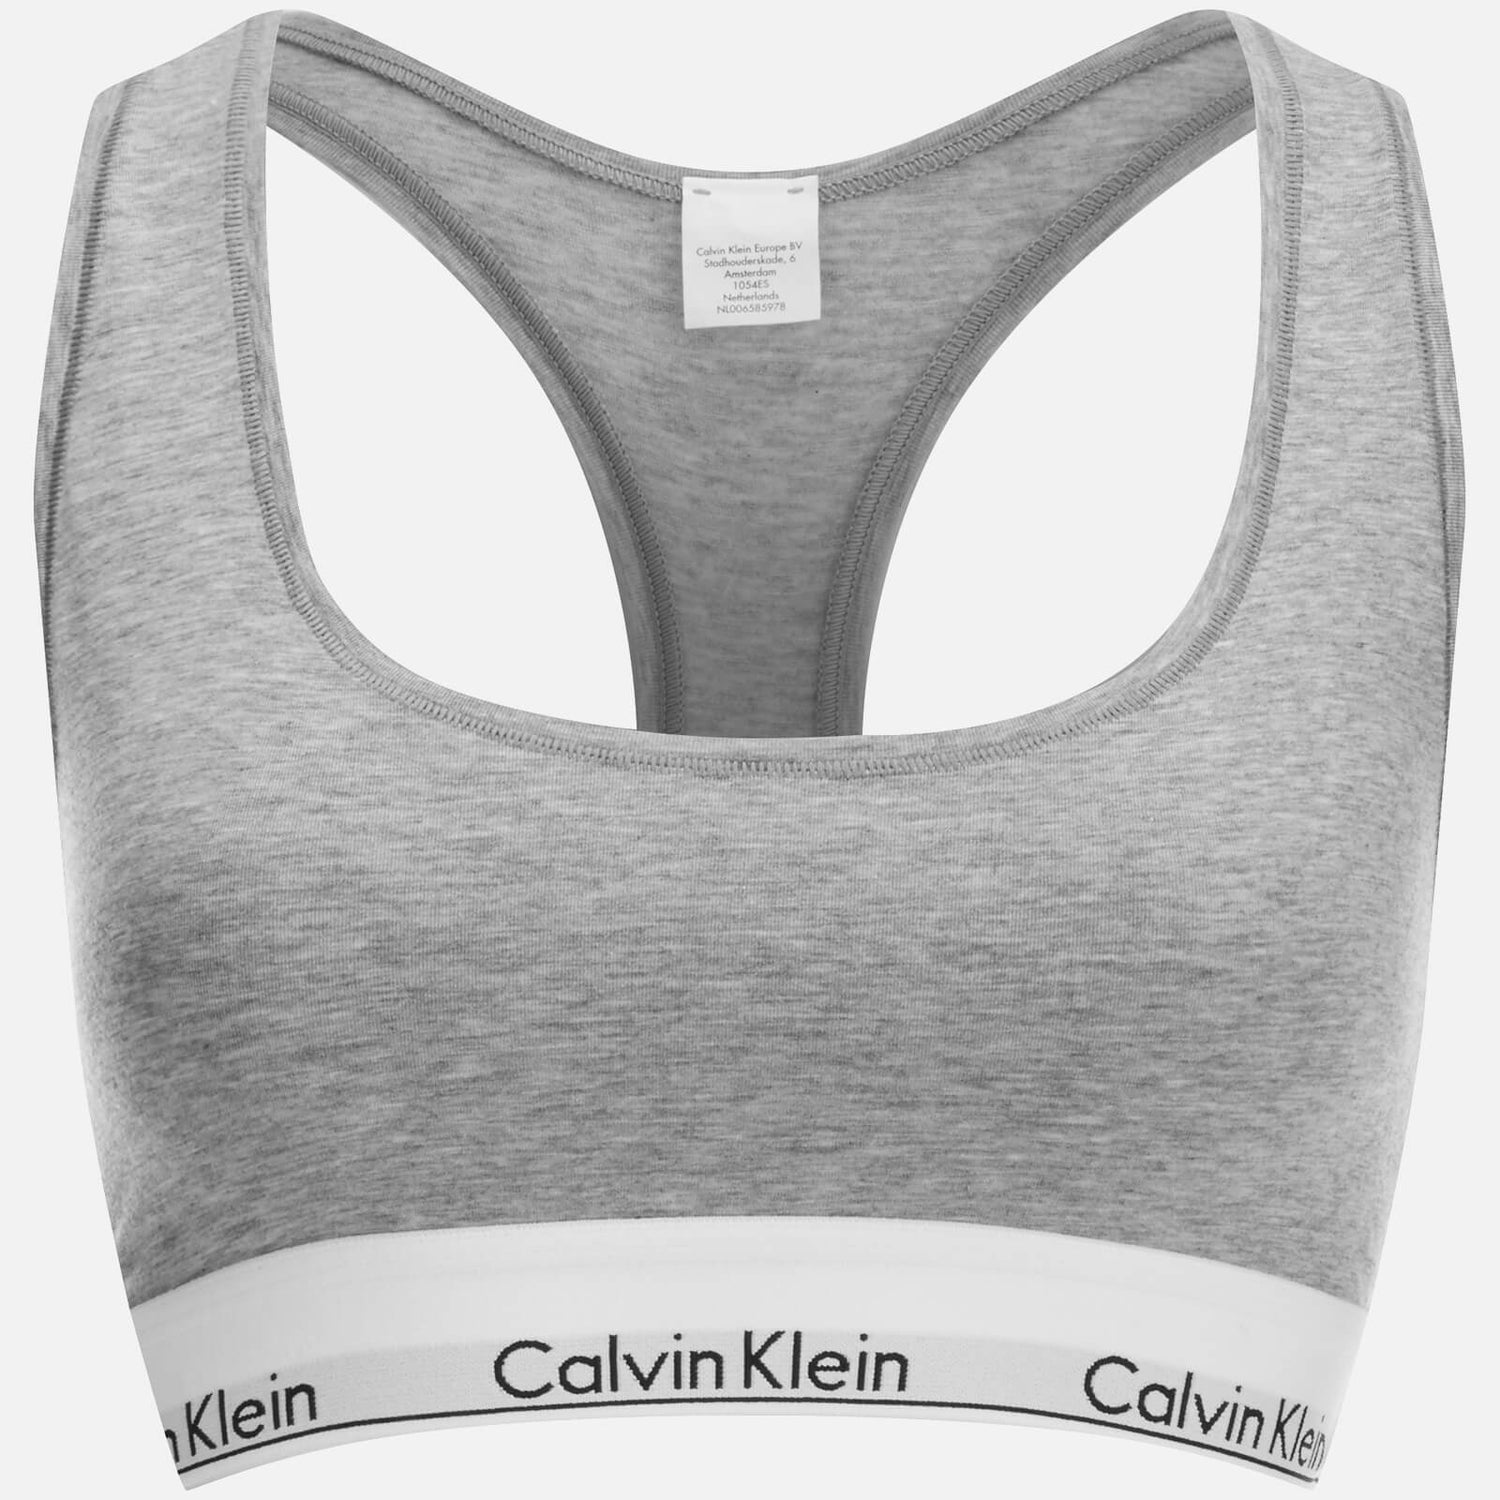 Calvin Klein Women's Modern Cotton Bralette - Grey Heather - L